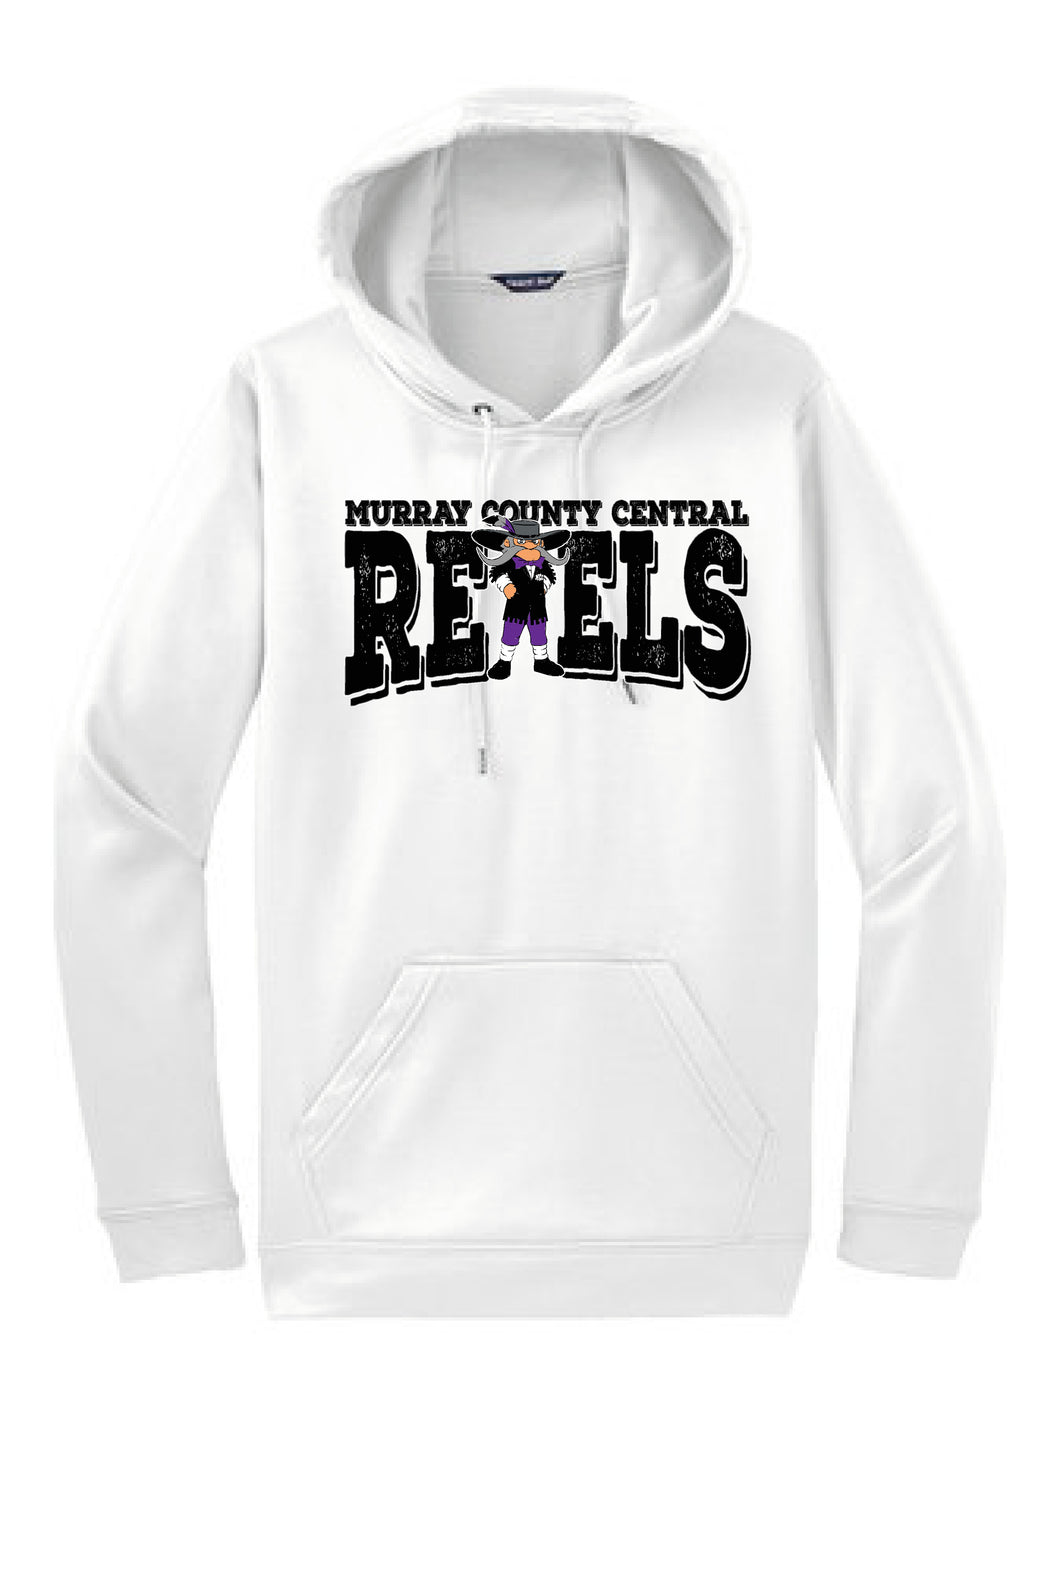 MCC Rebels Rudy Sport-Tek Hooded Sweatshirt - White